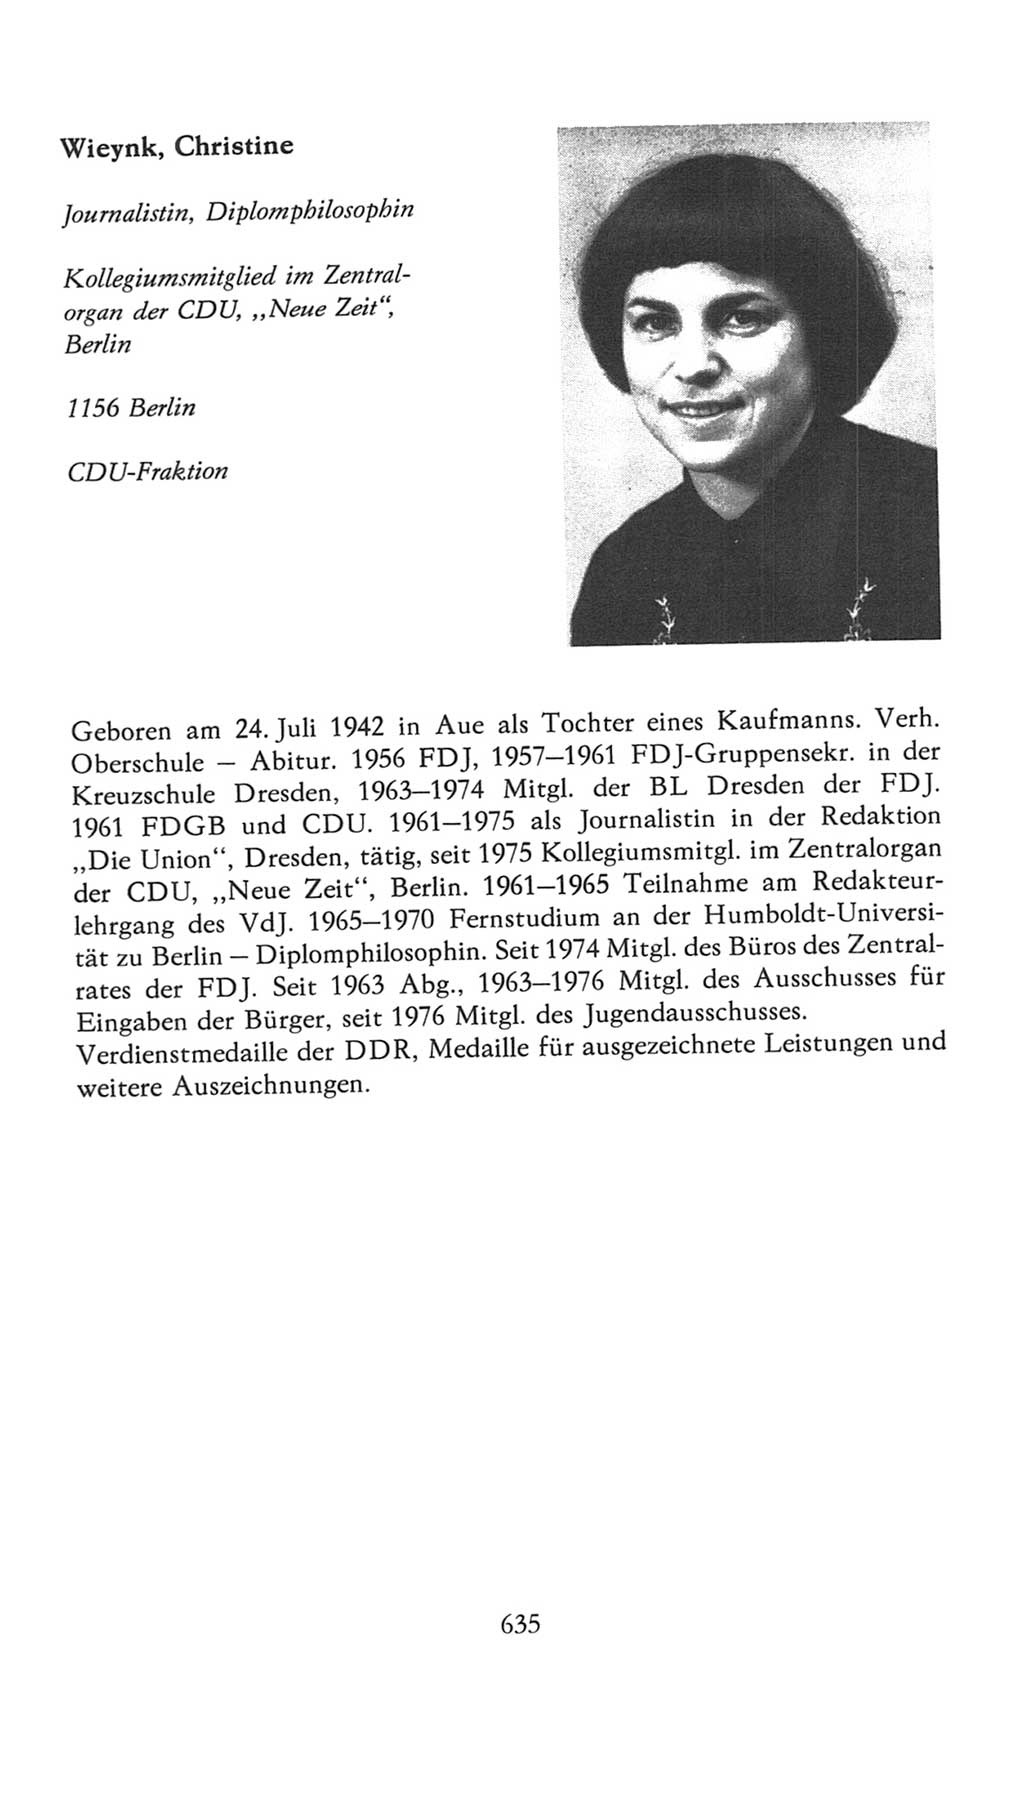 Volkskammer (VK) der Deutschen Demokratischen Republik (DDR), 7. Wahlperiode 1976-1981, Seite 635 (VK. DDR 7. WP. 1976-1981, S. 635)